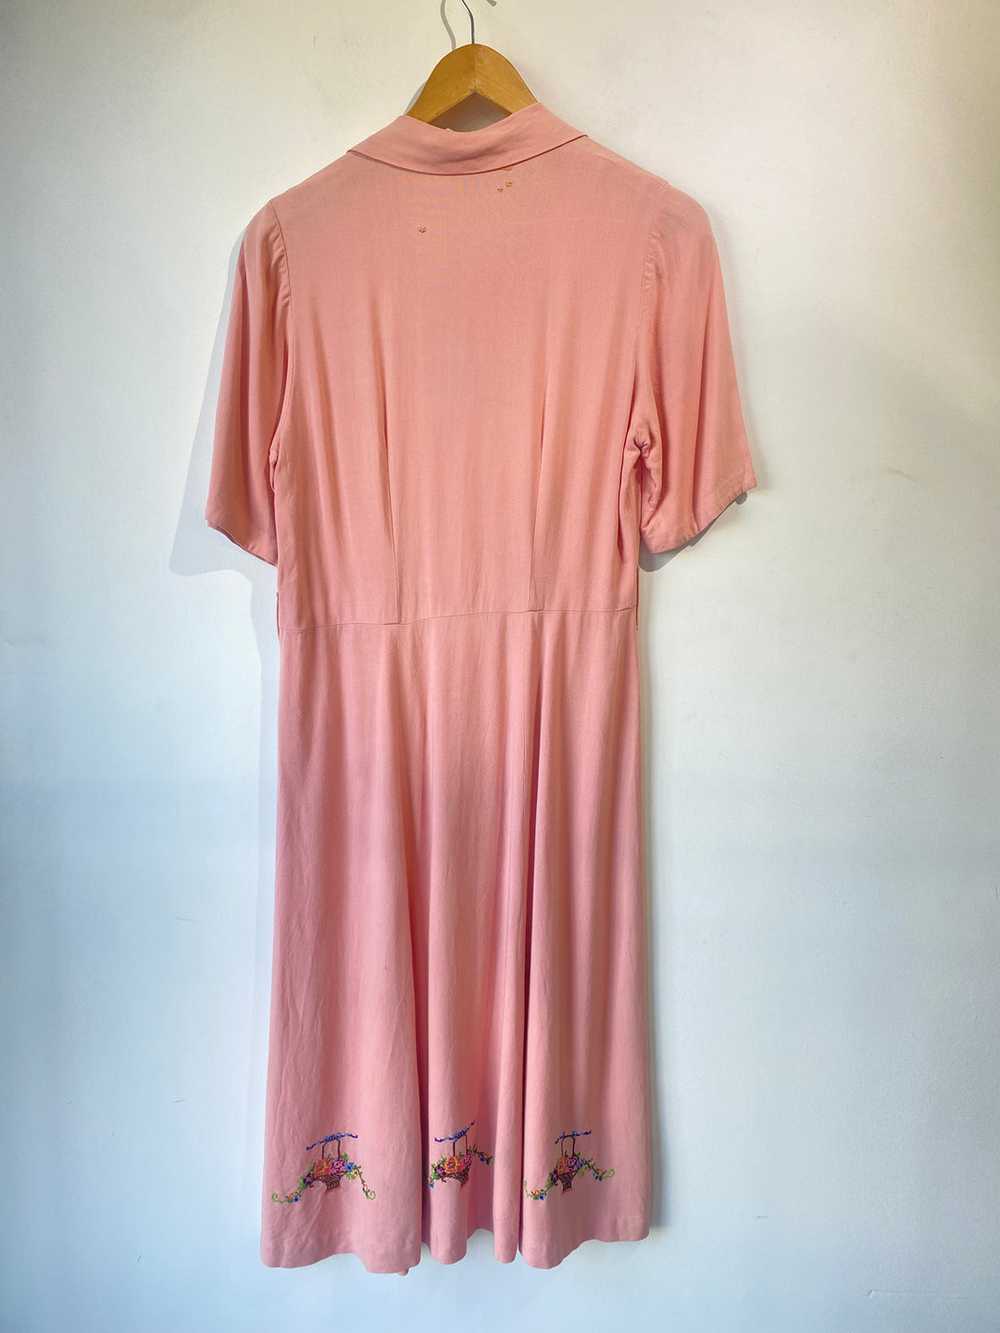 Vintage Pink Embroidered Dress - image 2